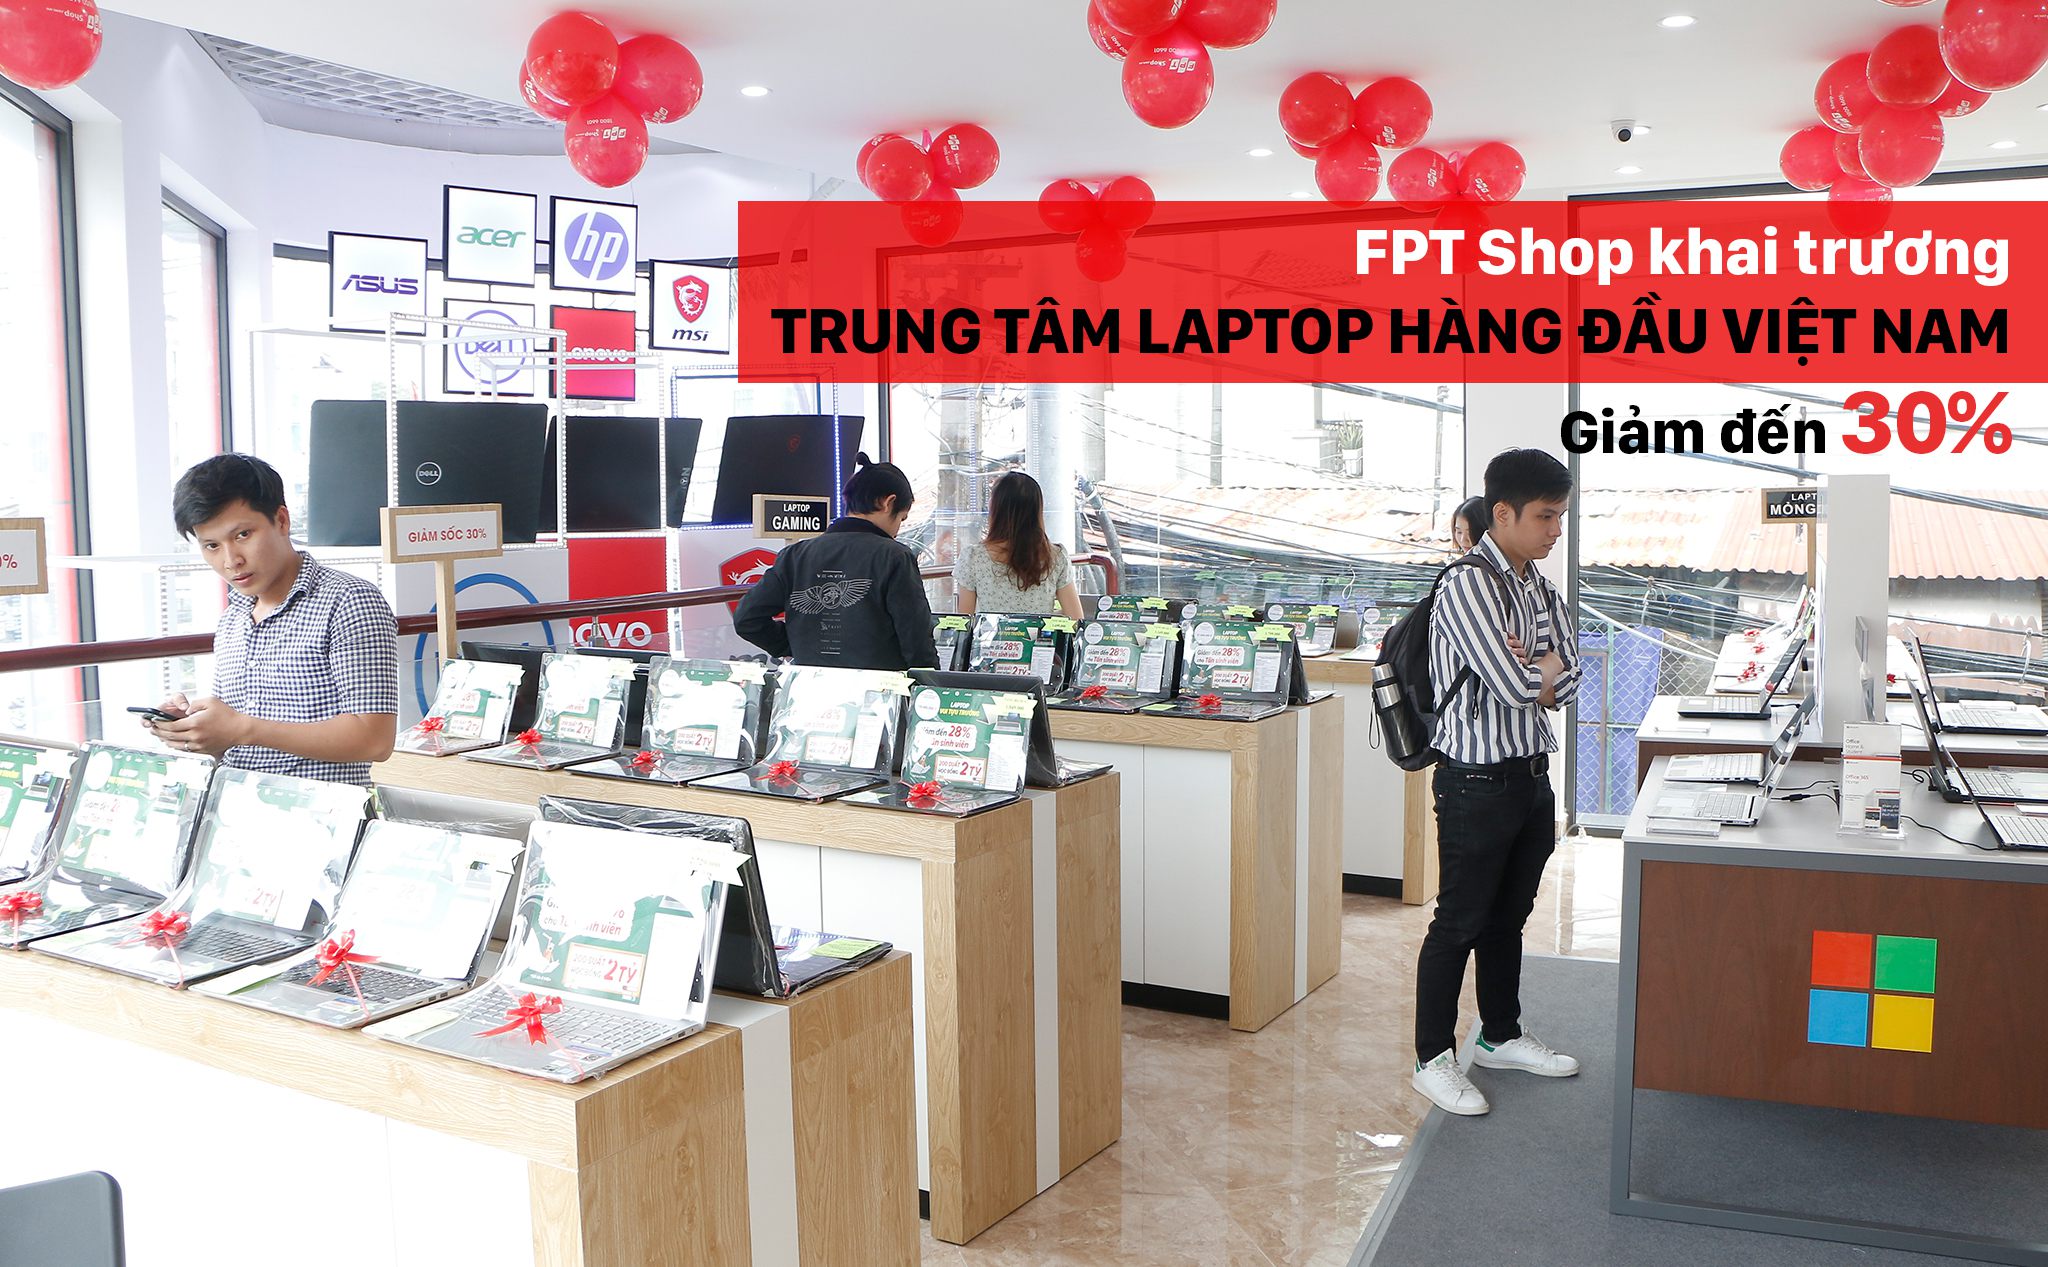 [QC] FPT Shop giảm sốc đến 30% nhân dịp khai trương trung tâm laptop hàng đầu Việt Nam